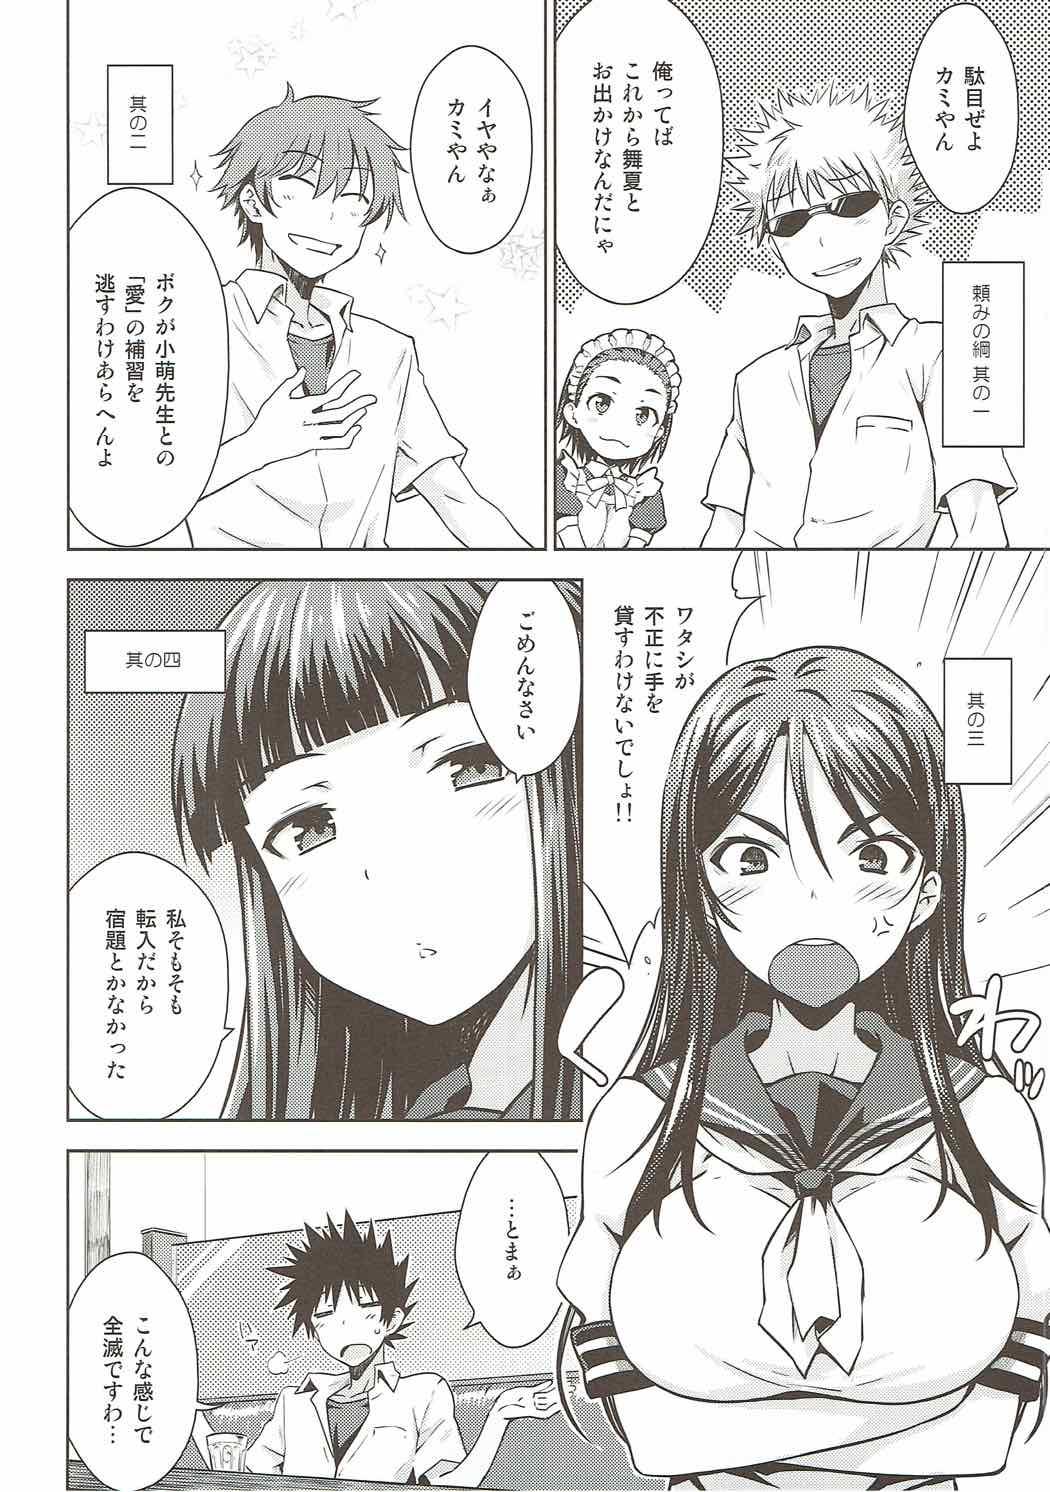 Rubbing Natsuyasumi no Shukudai - Toaru kagaku no railgun The - Page 5